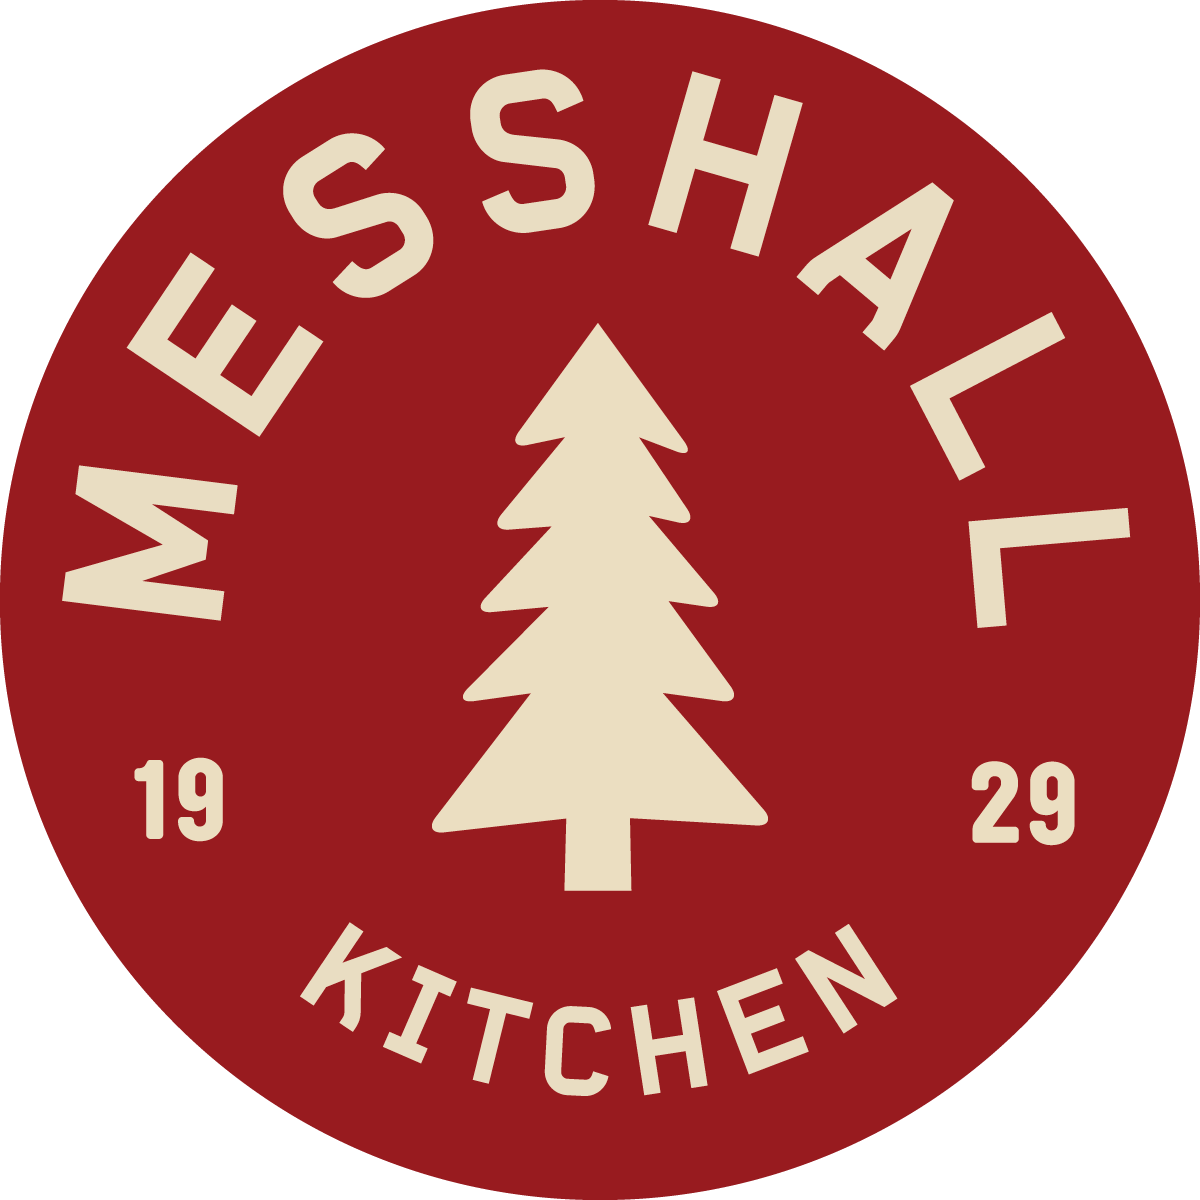 Messhall Kitchen